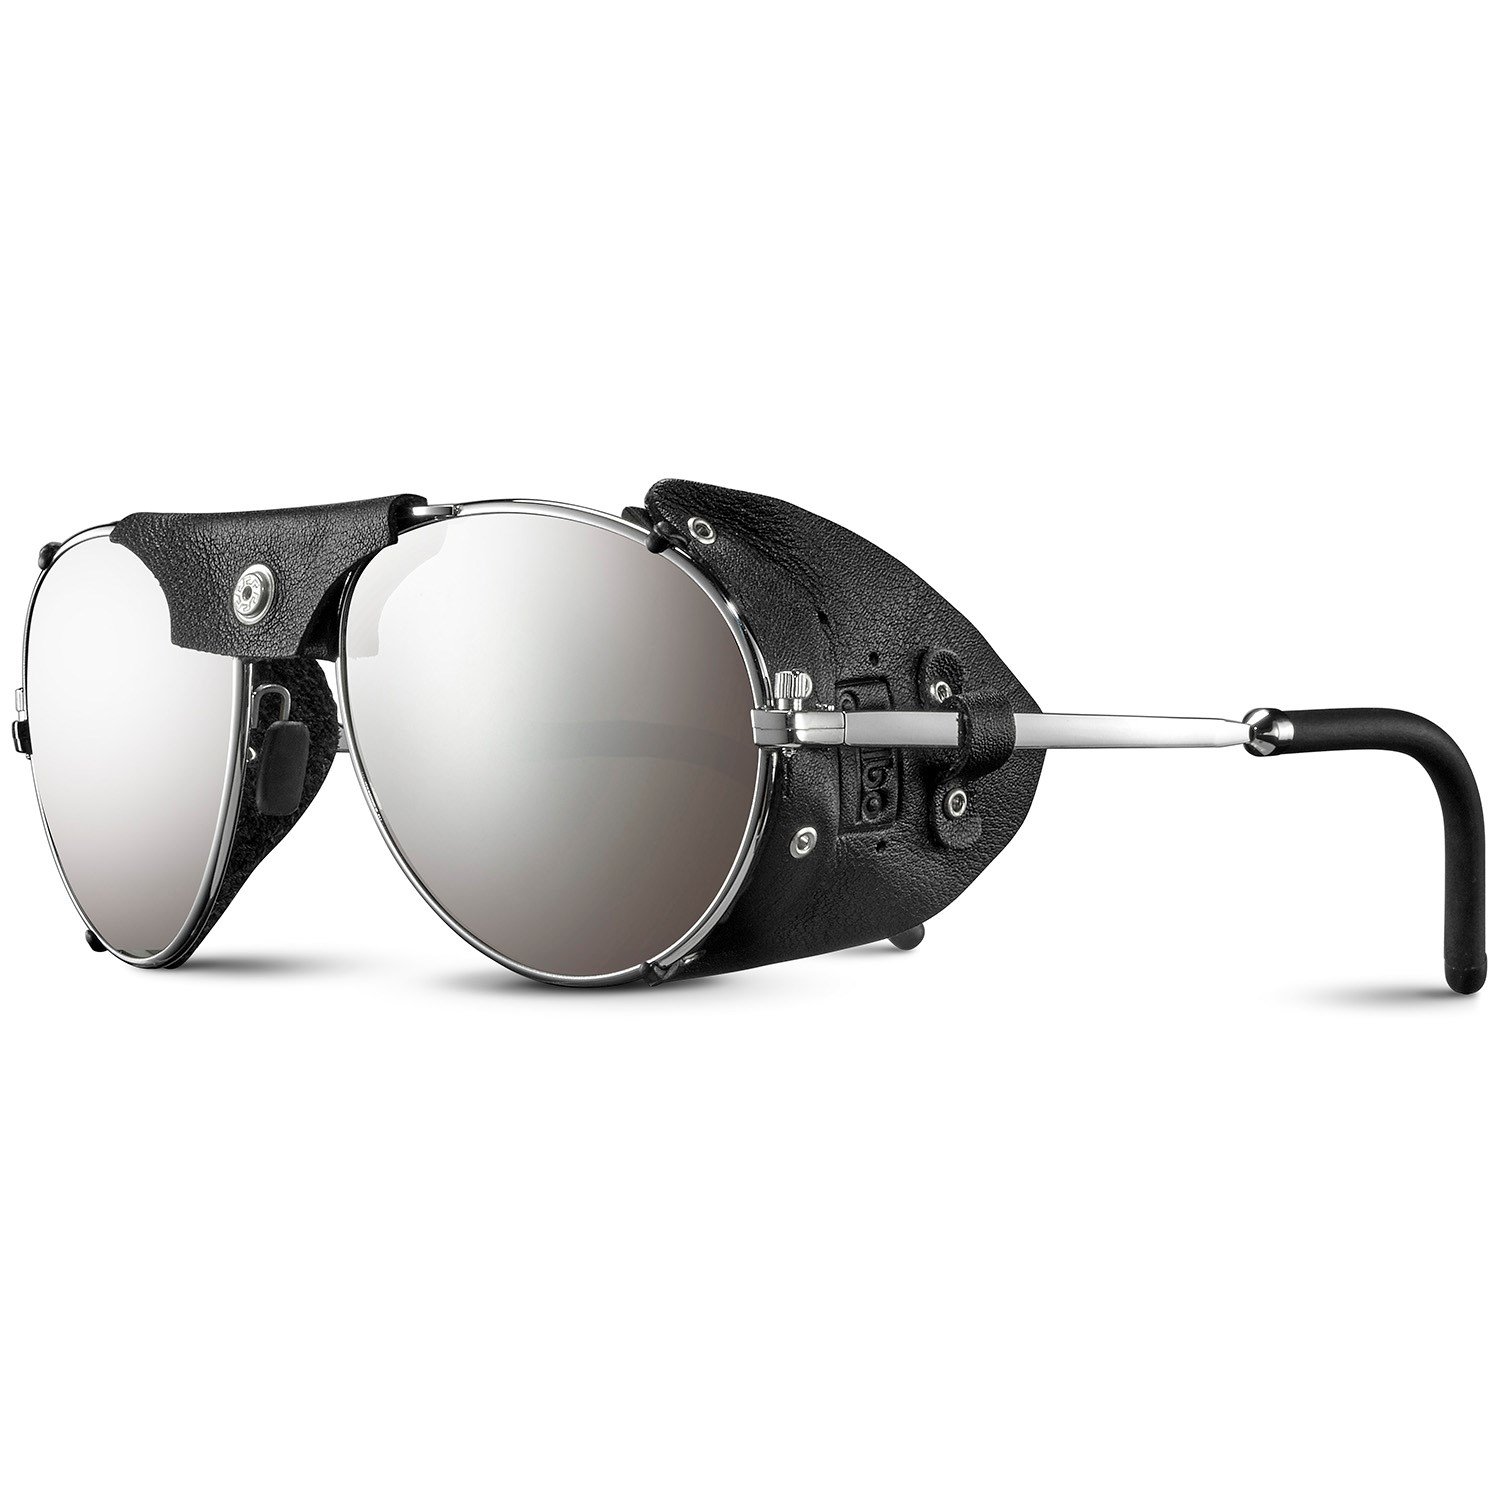 Солнцезащитные очки Julbo Cham, серебряный солнцезащитные очки cham spectron 4 julbo цвет silver black